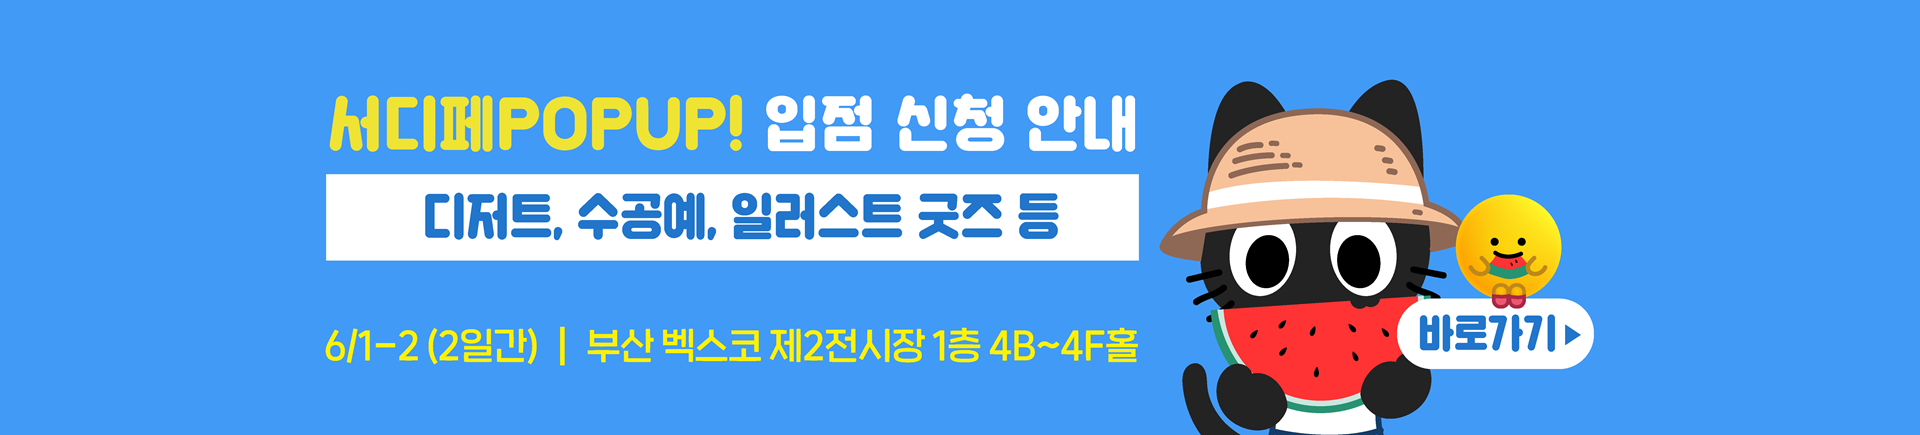 6월 서디페POPUP X 부산코믹월드 부스 신청